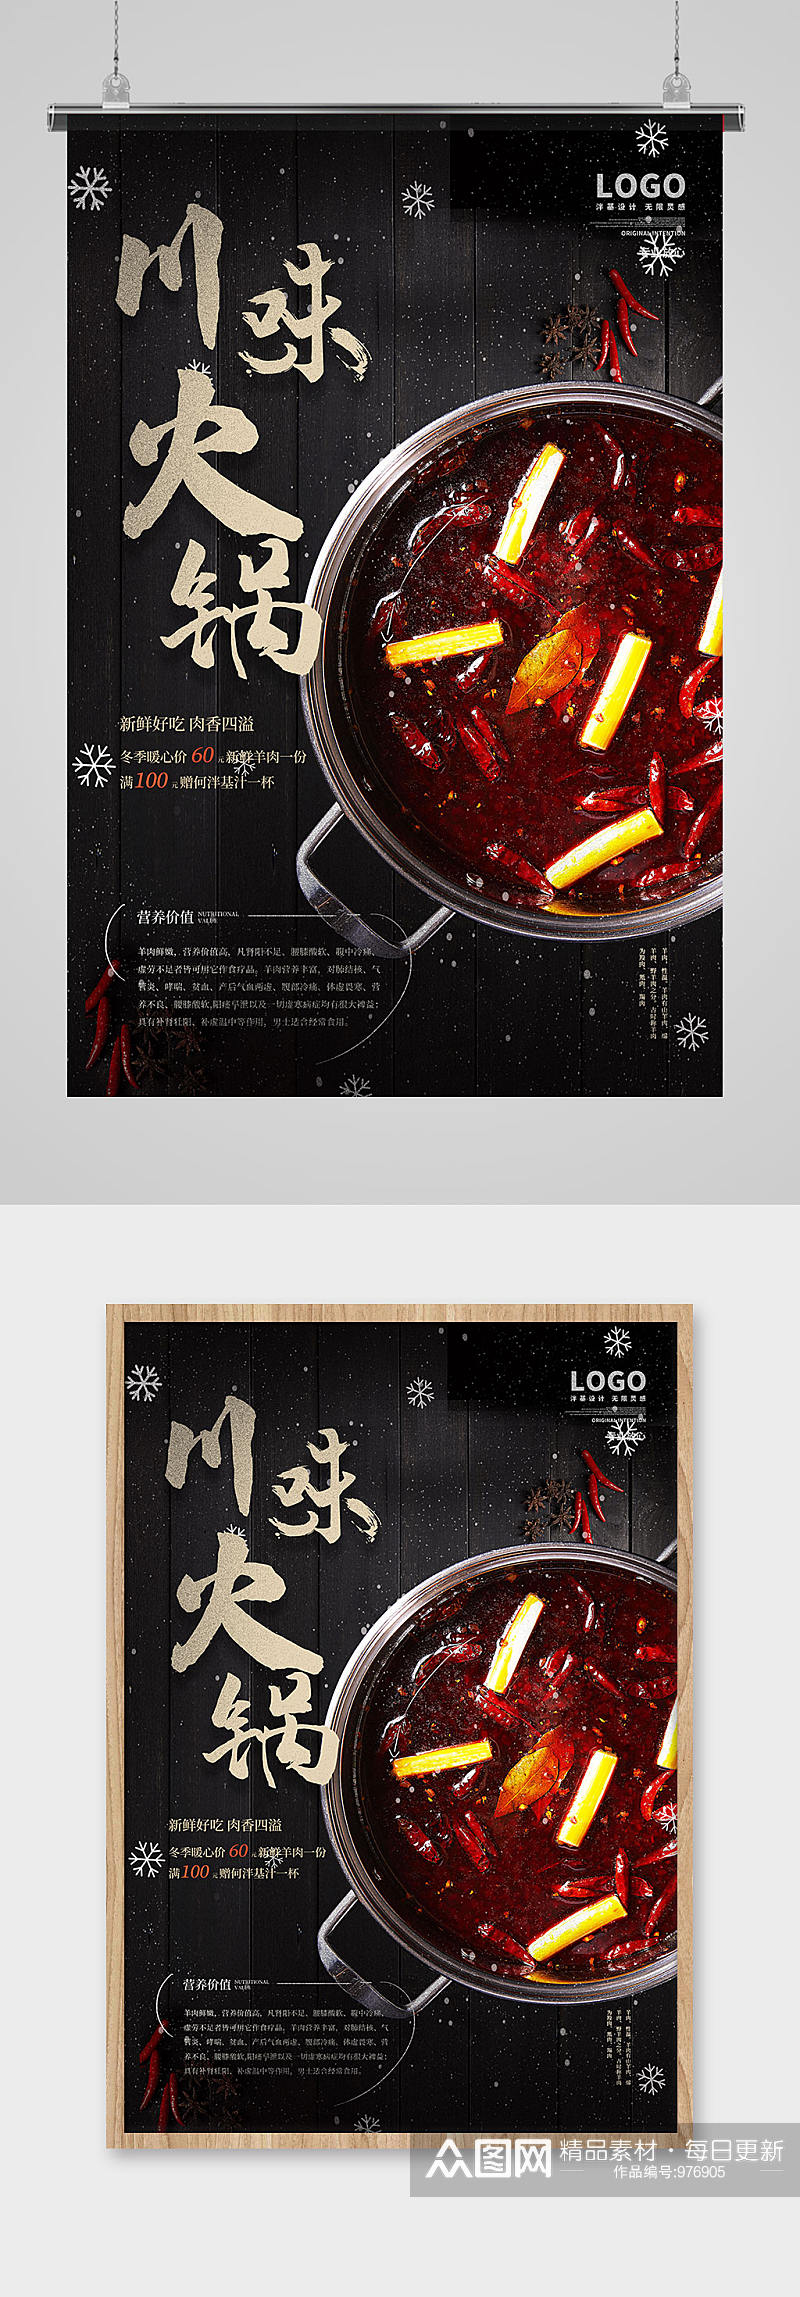 黑色木纹桌面羊肉火锅宣传餐饮海报素材